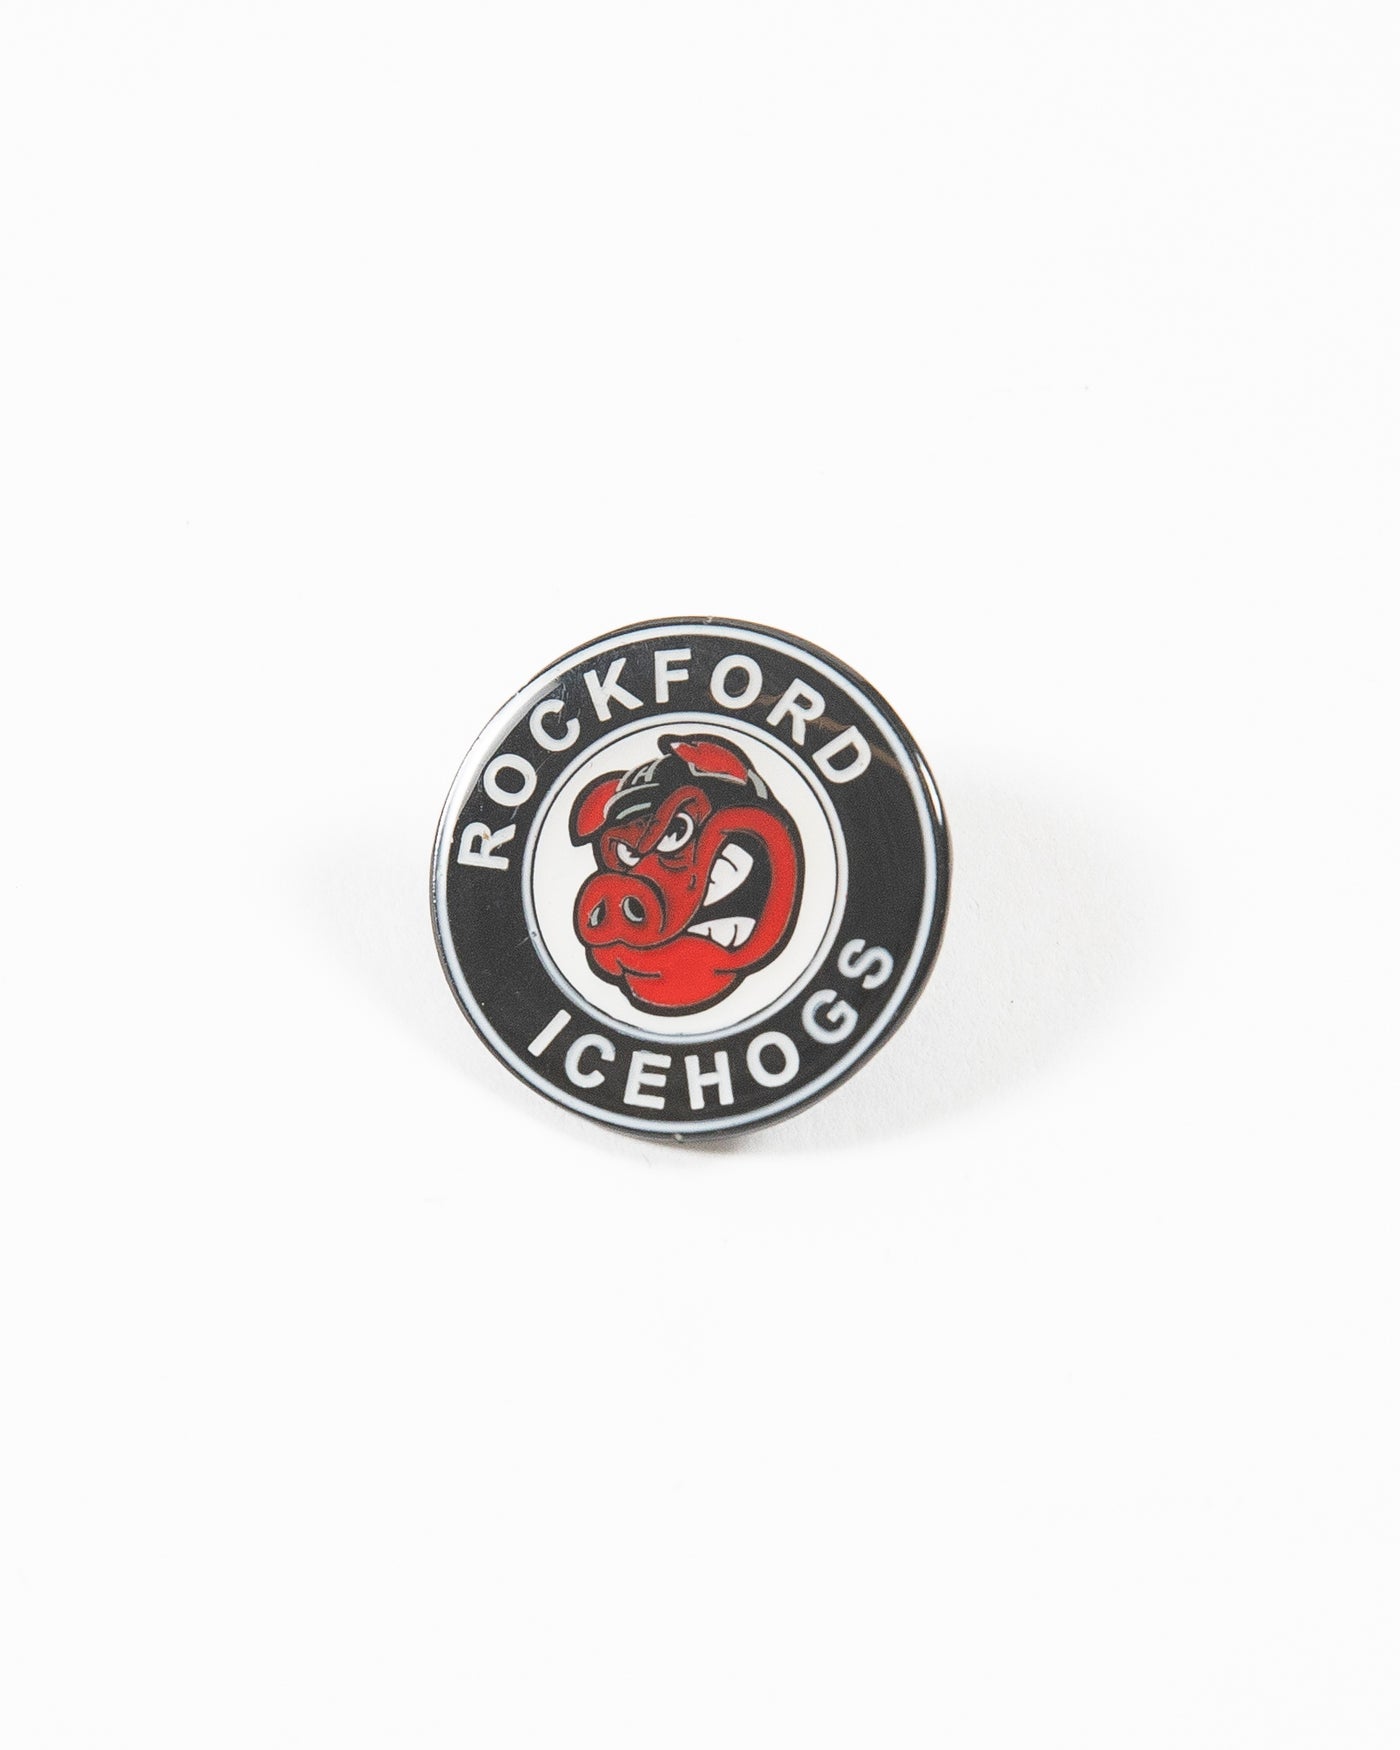 Rockford IceHogs logo pin - front lay flat